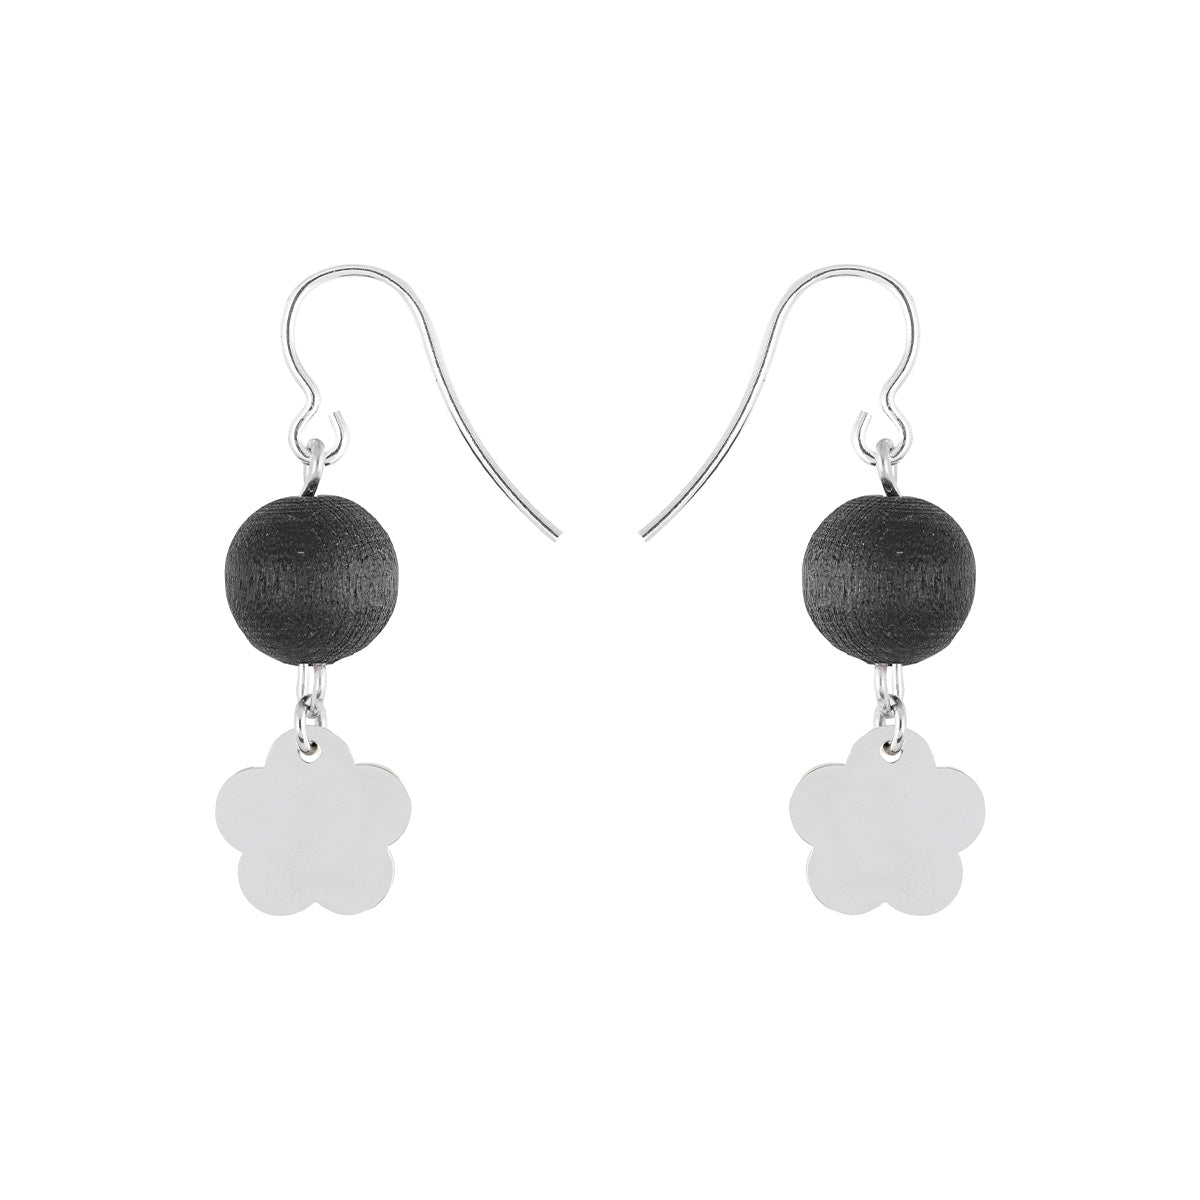 Minea earrings, black